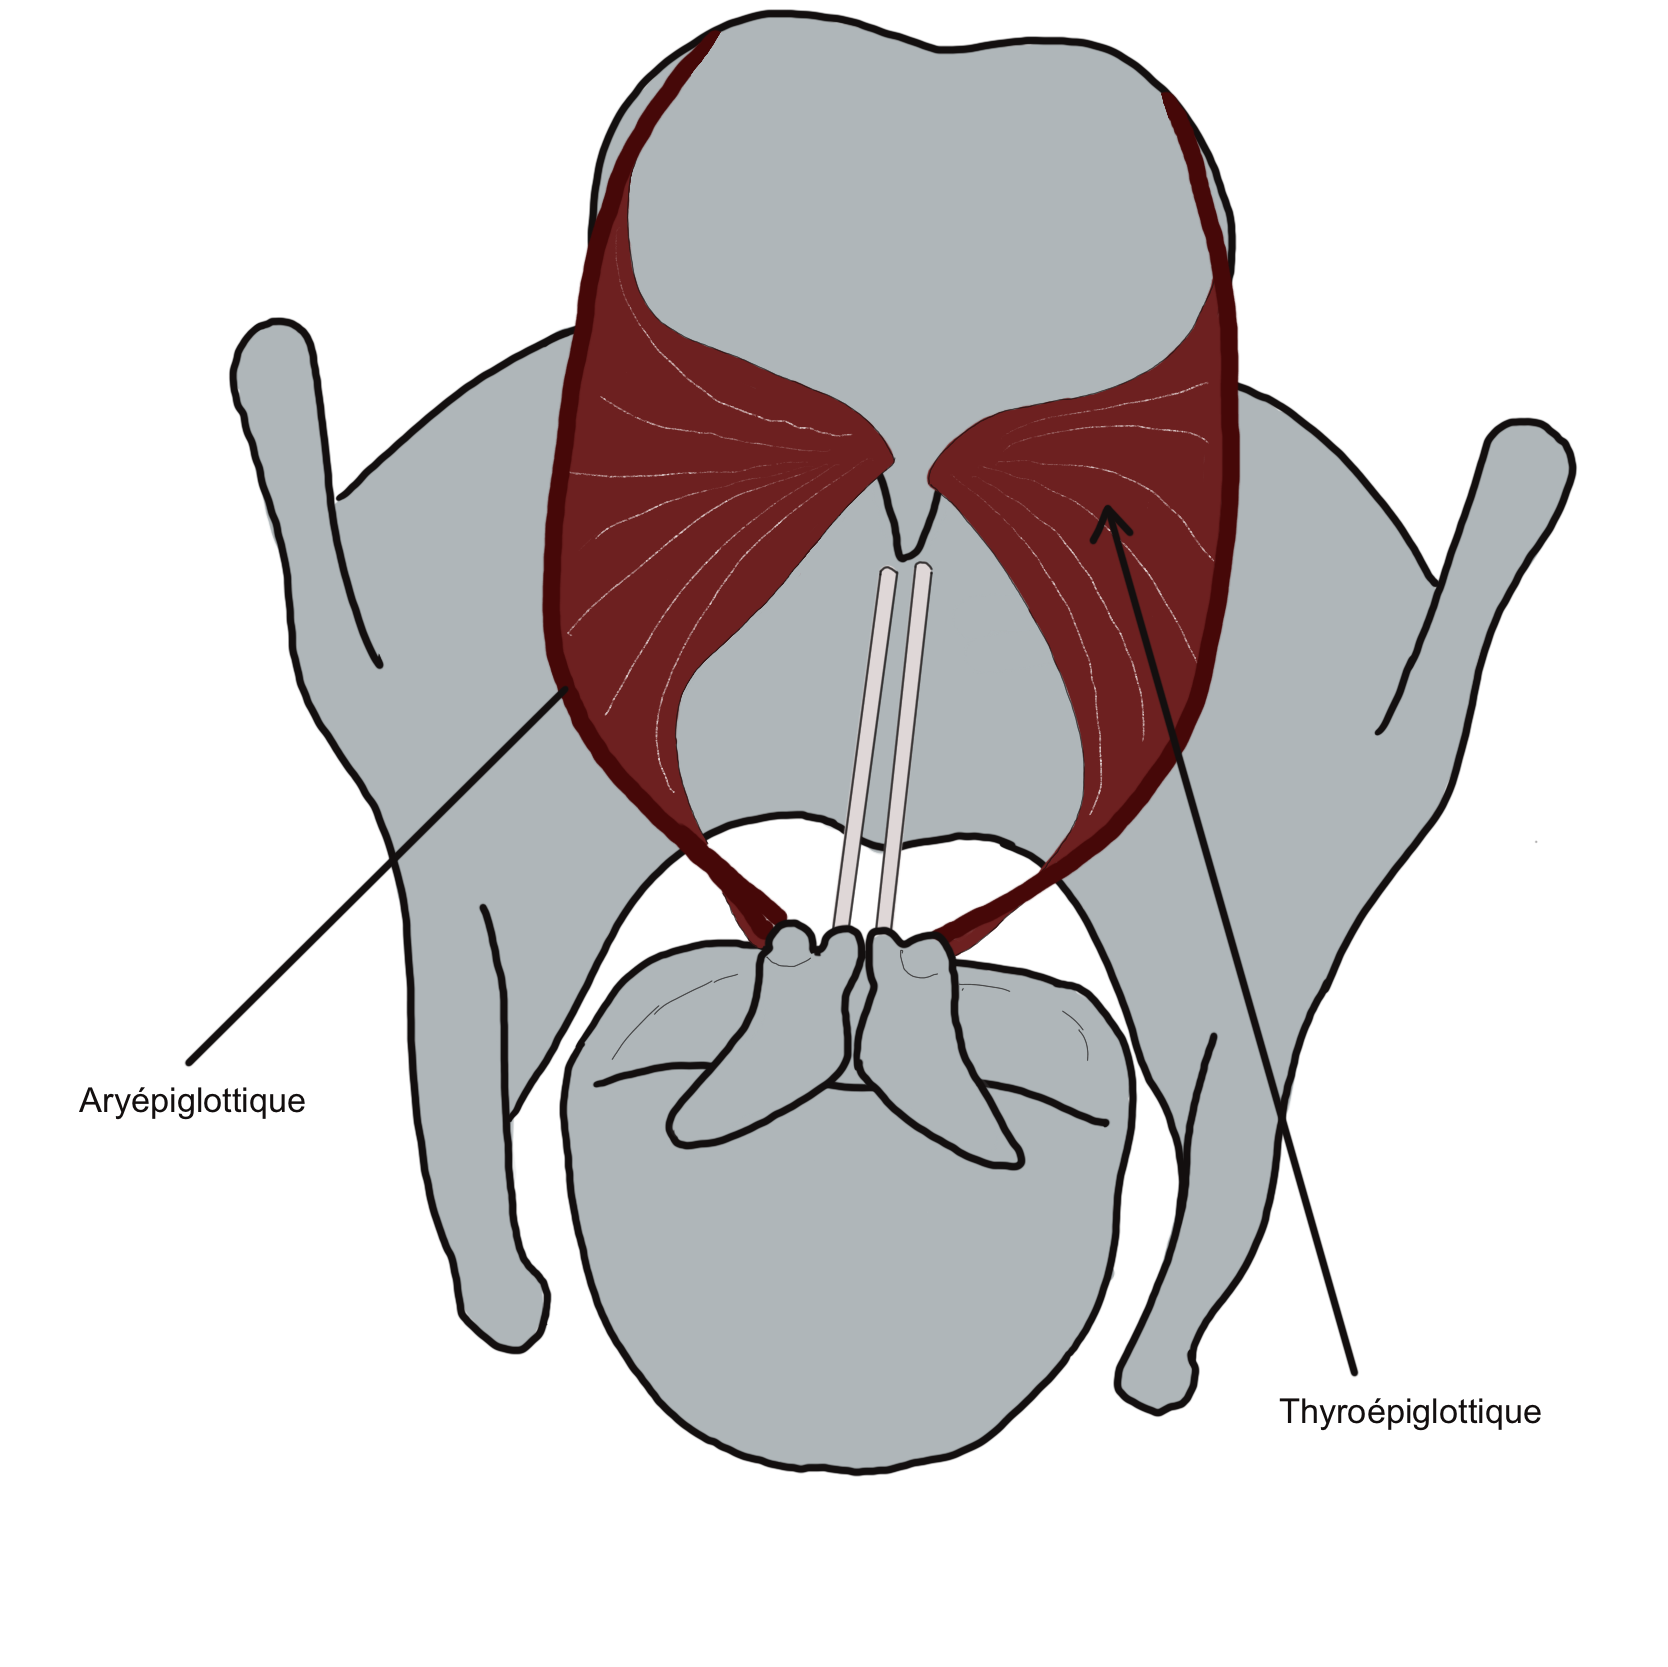 Aryepiglottic sphincter